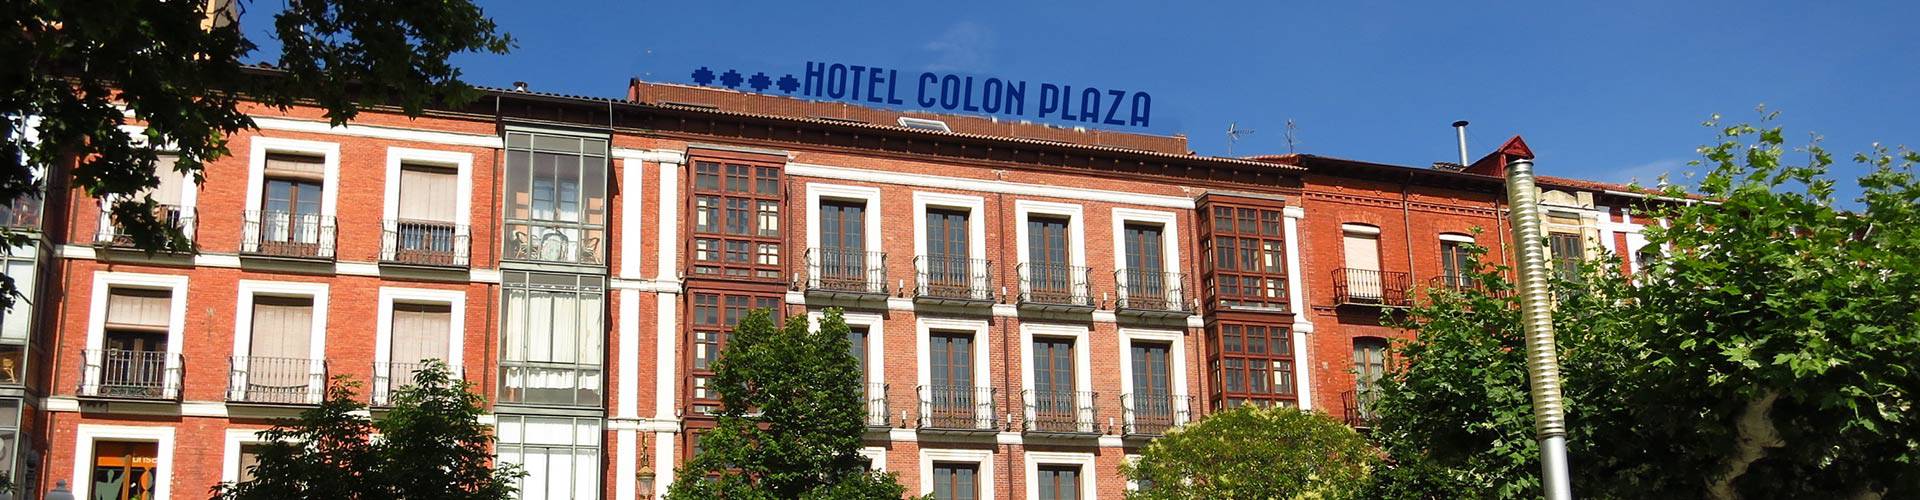 Valladolid Hoteles - Valladolid - 